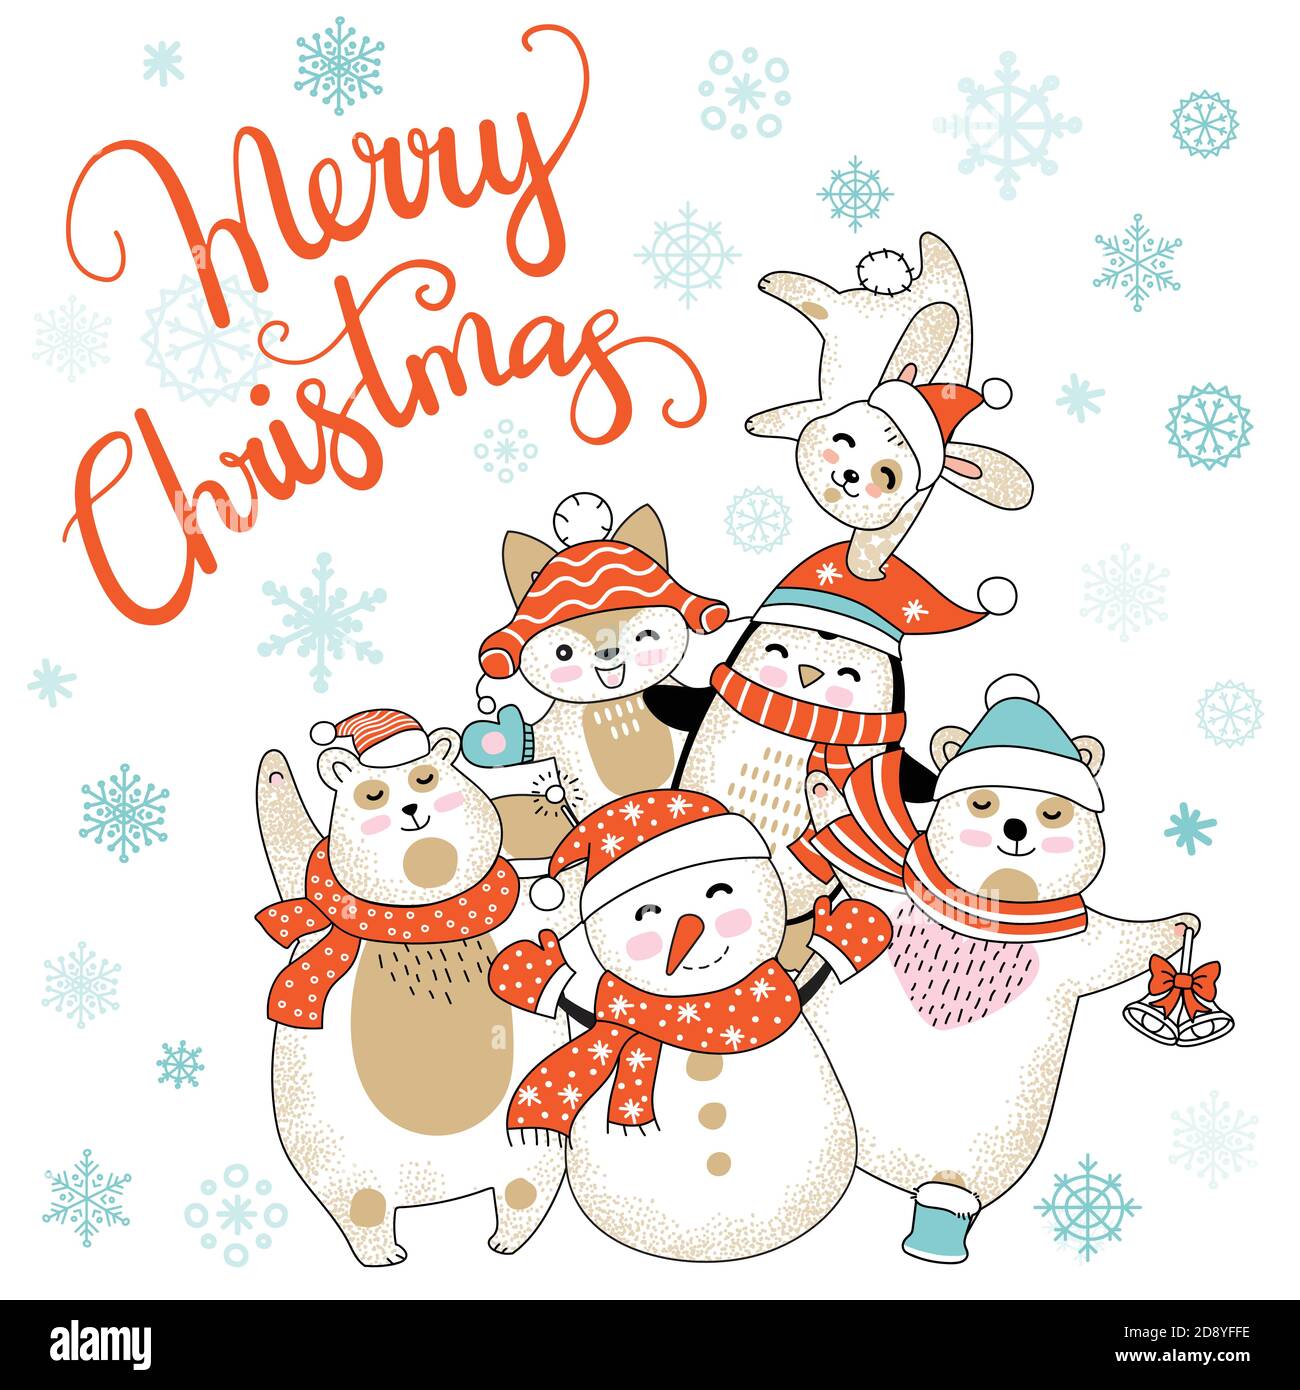 Weihnachtskarte Glückwünsche mit niedlichen Cartoon Tiere Stock Vektor